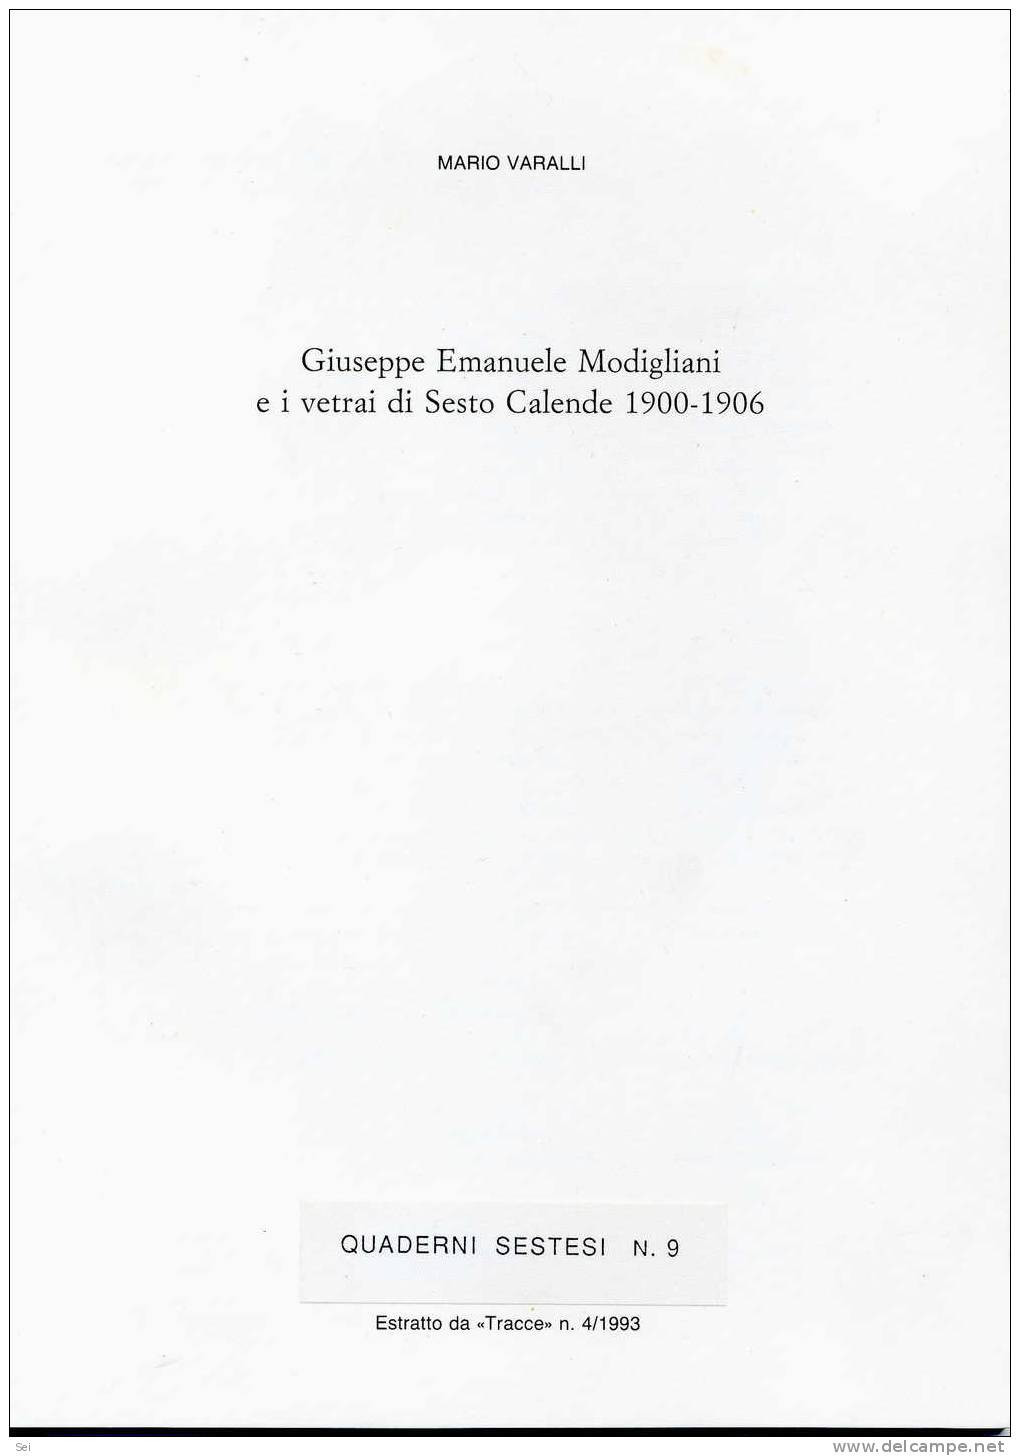 C 607 - Giuseppe Emanuele Modigliani, Vetrai, Sesto Calende, Livorno - Geschichte, Biographie, Philosophie